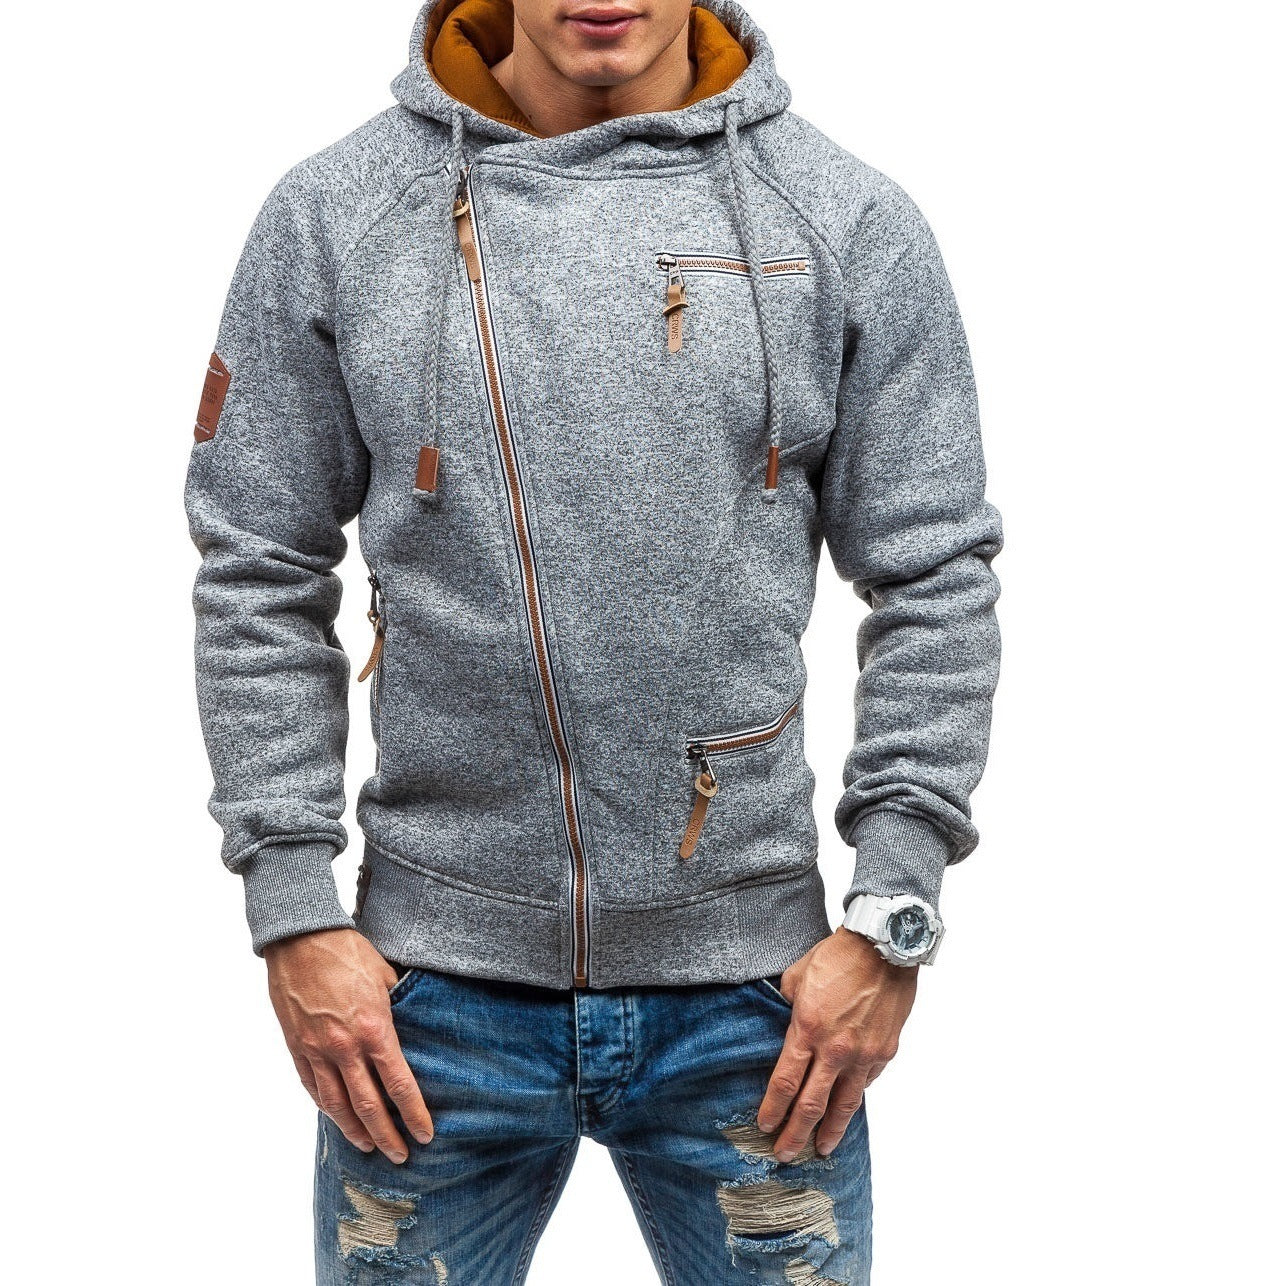 Men Side zipper gauze hoodies sweater - Plushlegacy